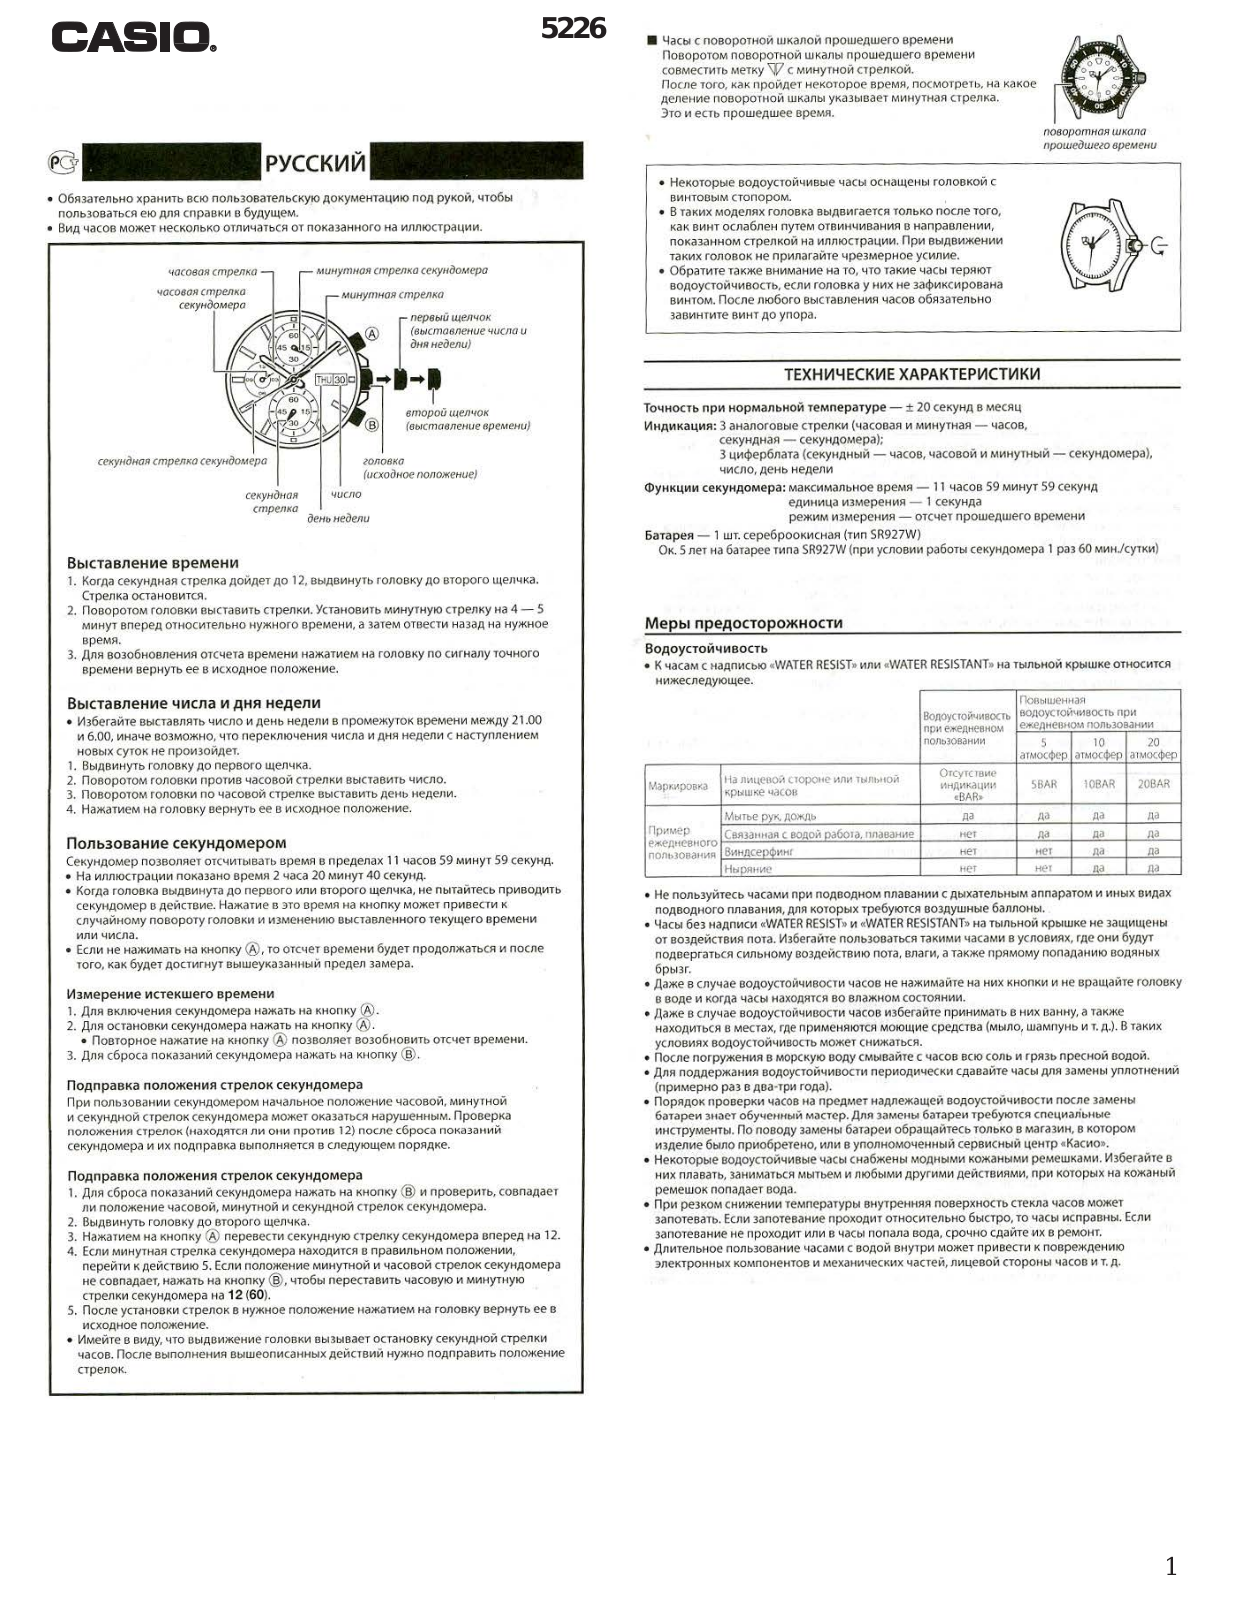 Casio EFR-506, EFR-503 User Manual